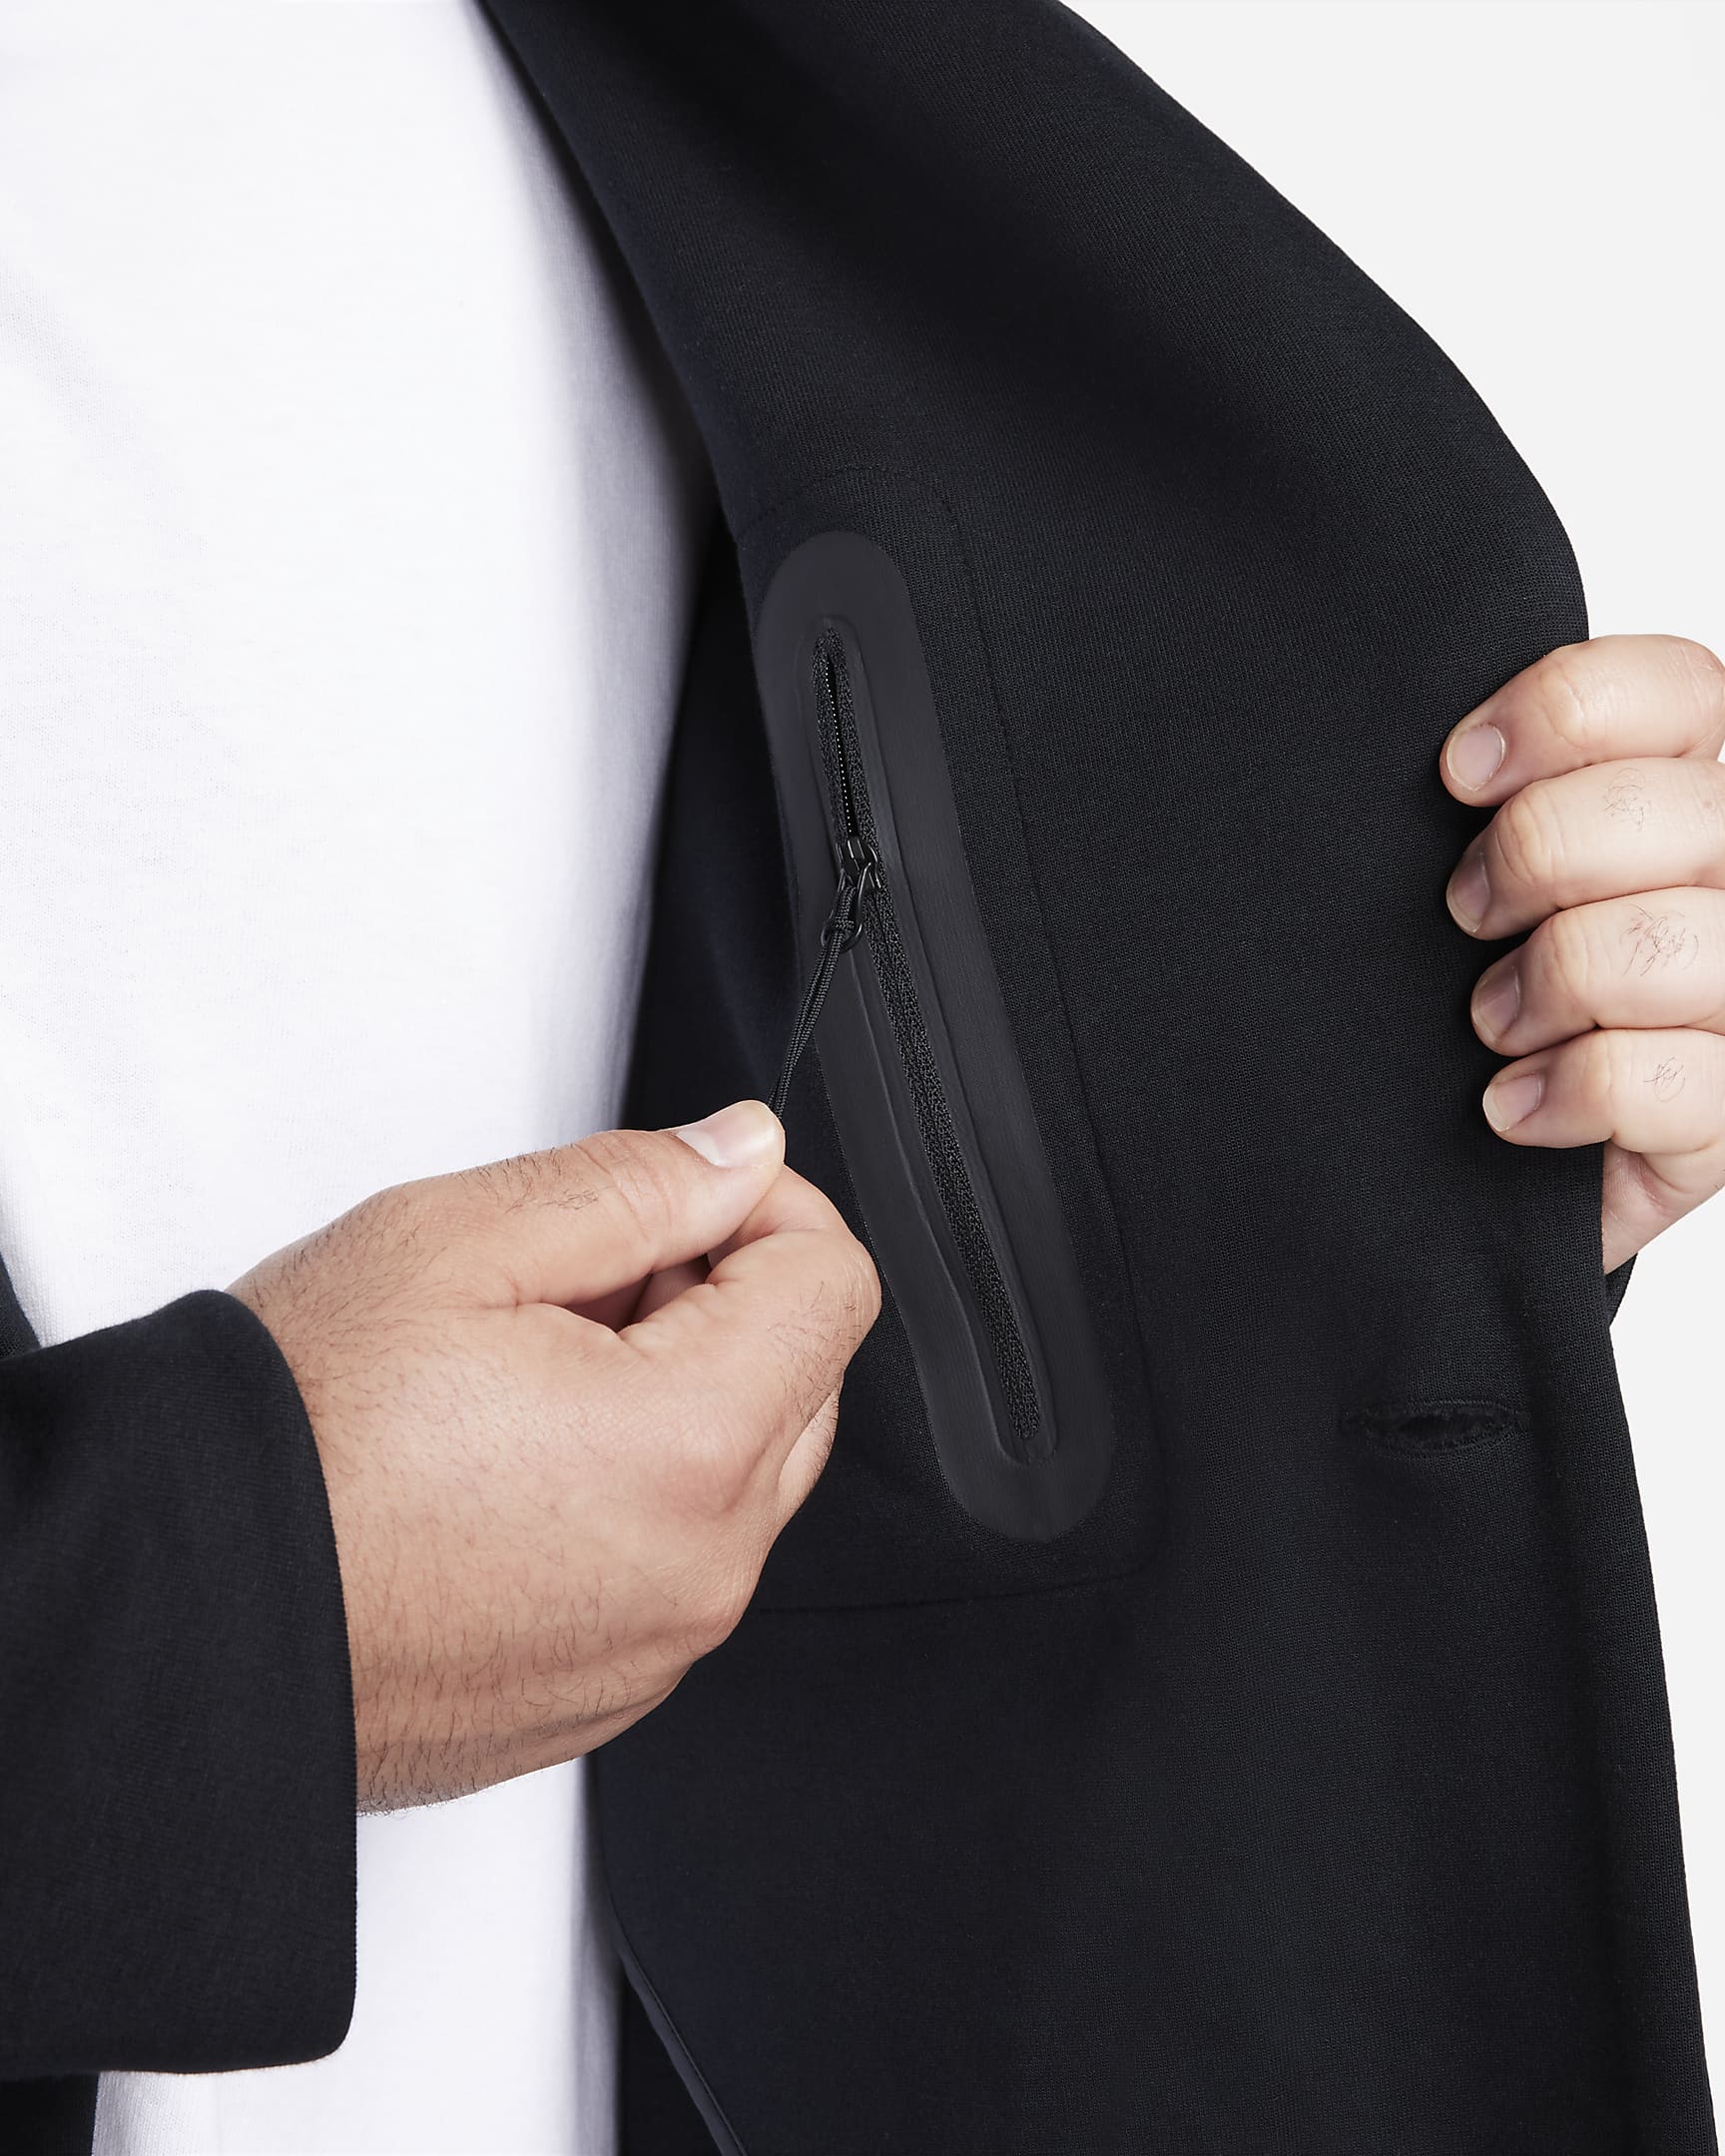 Nike Sportswear Tech Fleece Re-Imagined Men's Loose Fit Trench Coat ...